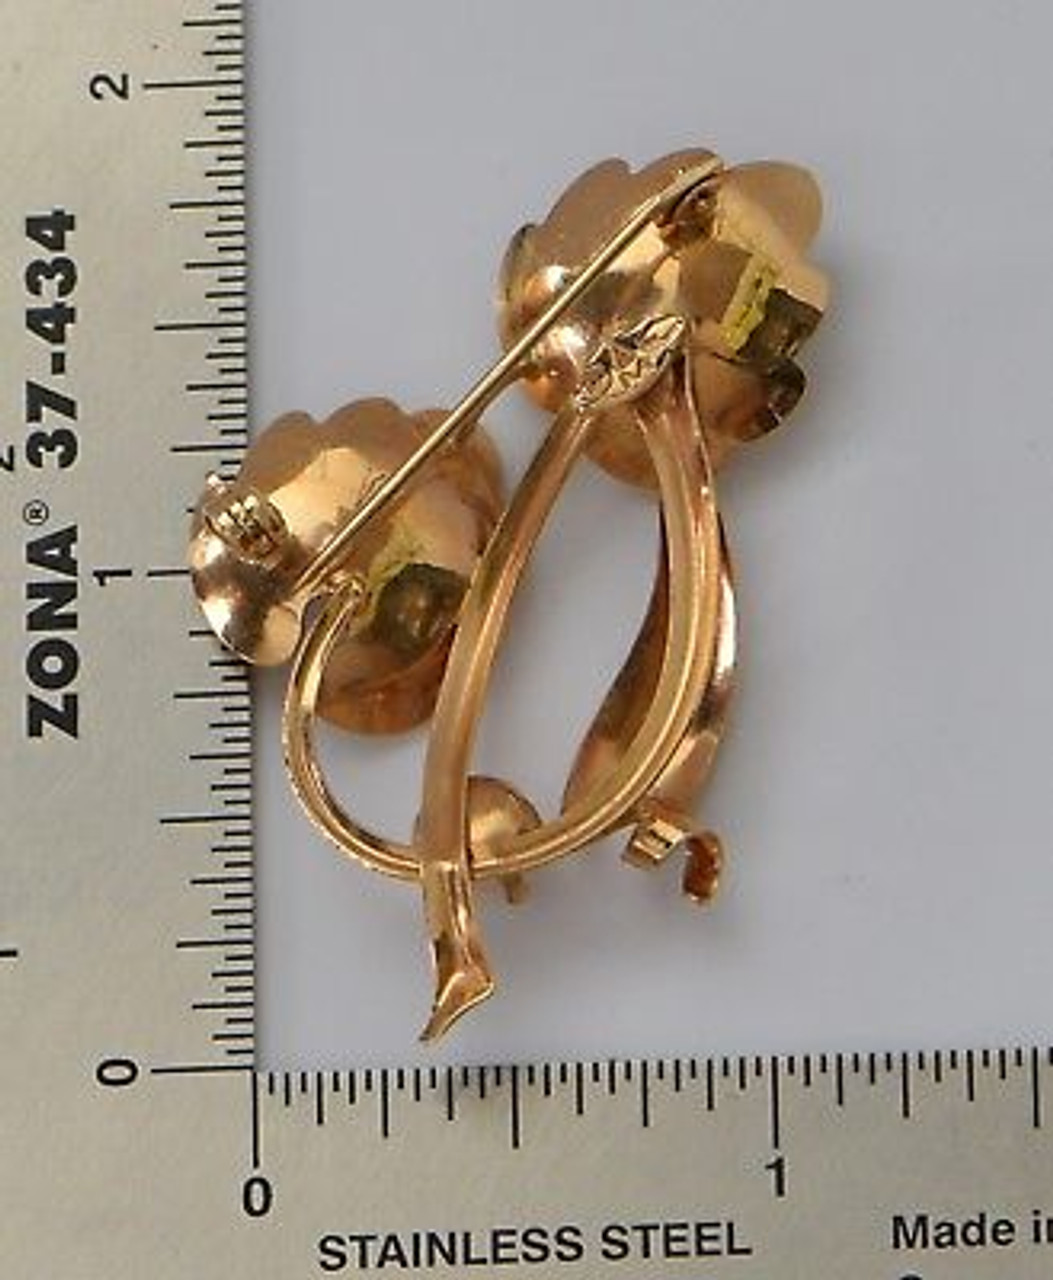 Jewelry, Vintage Brooch Brown Rhinestones Gold Floral Leaves